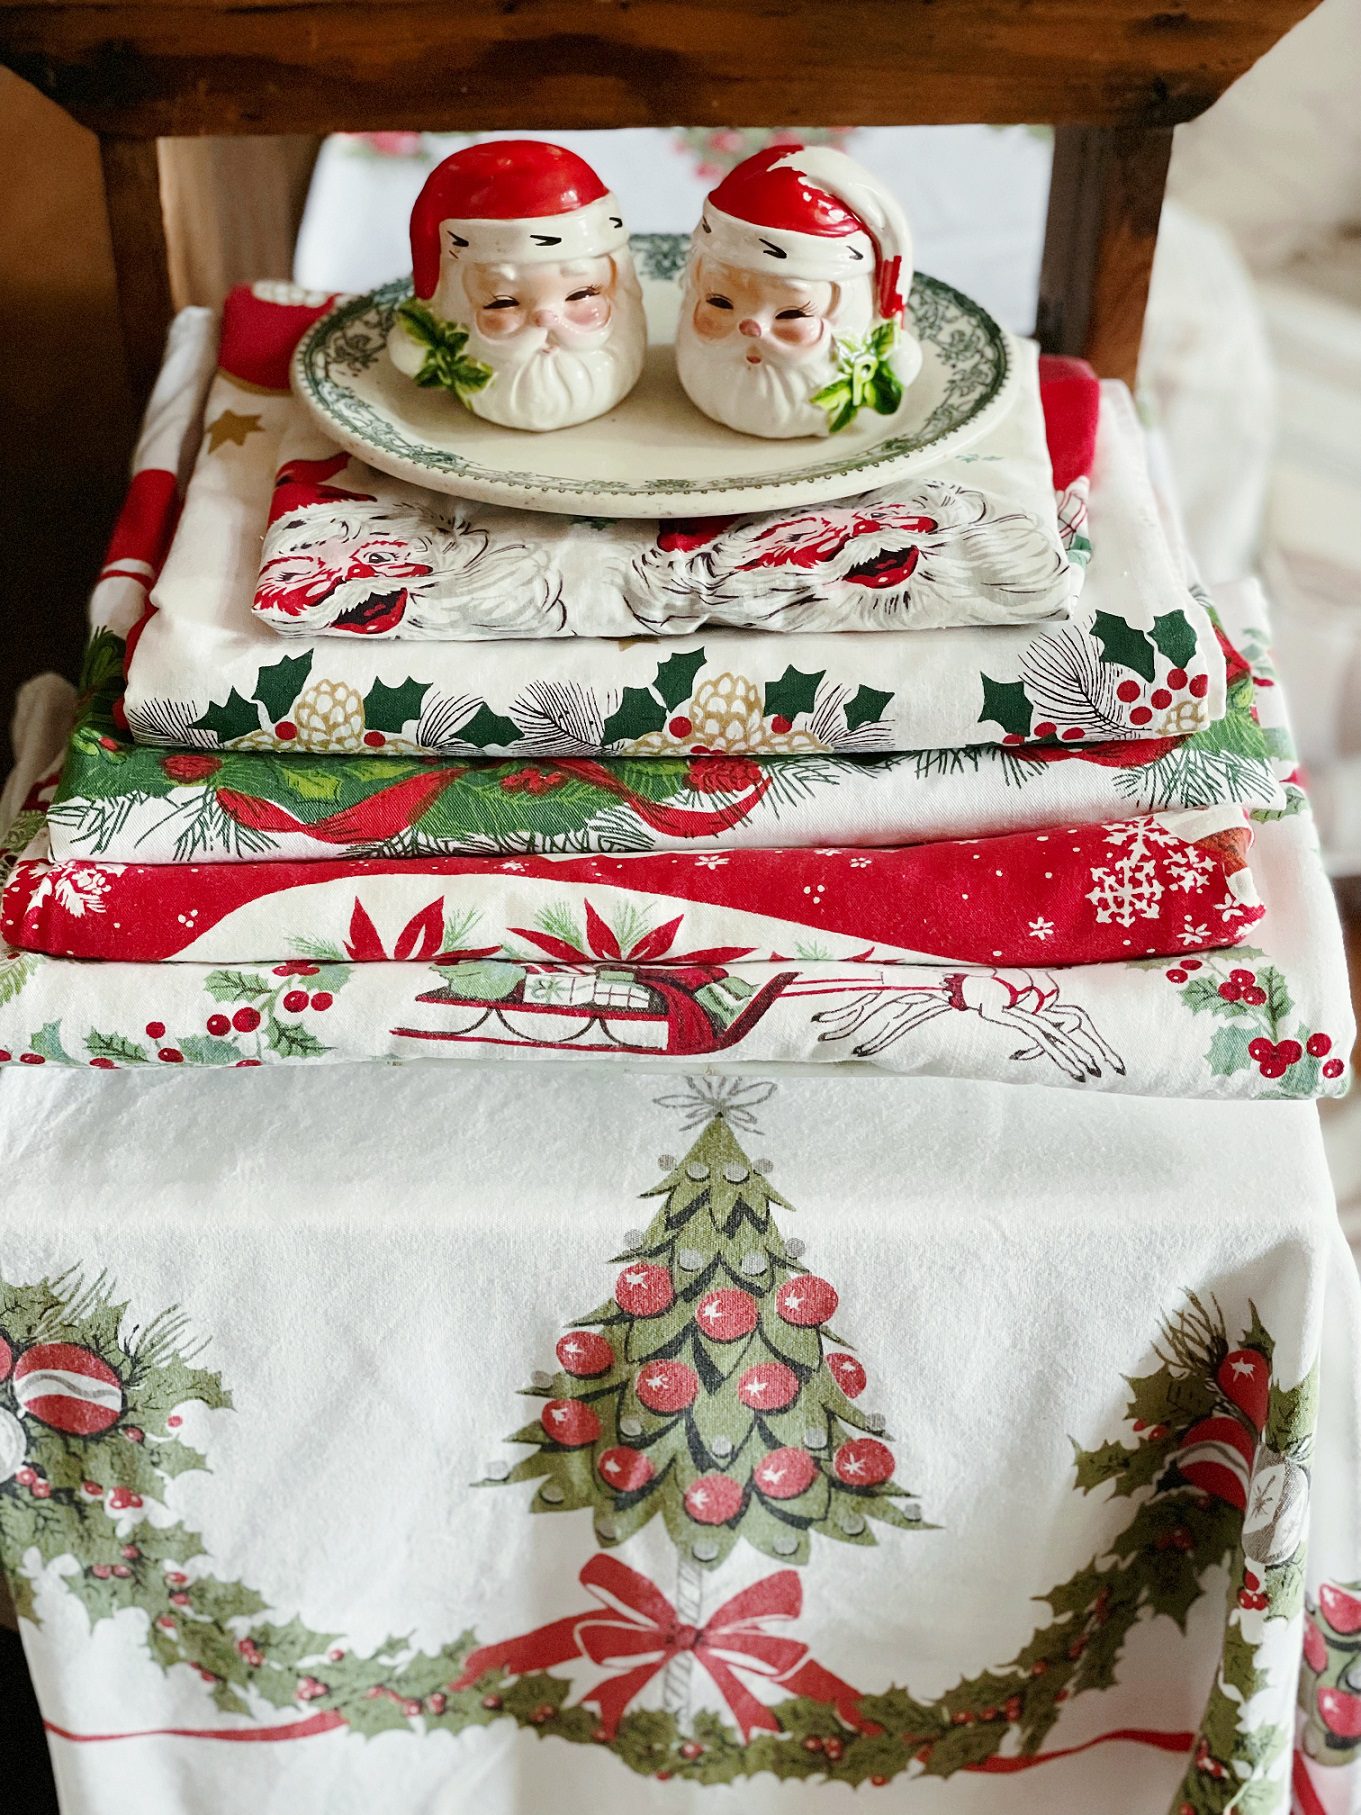 Vintage tablecloths for Christmas décor